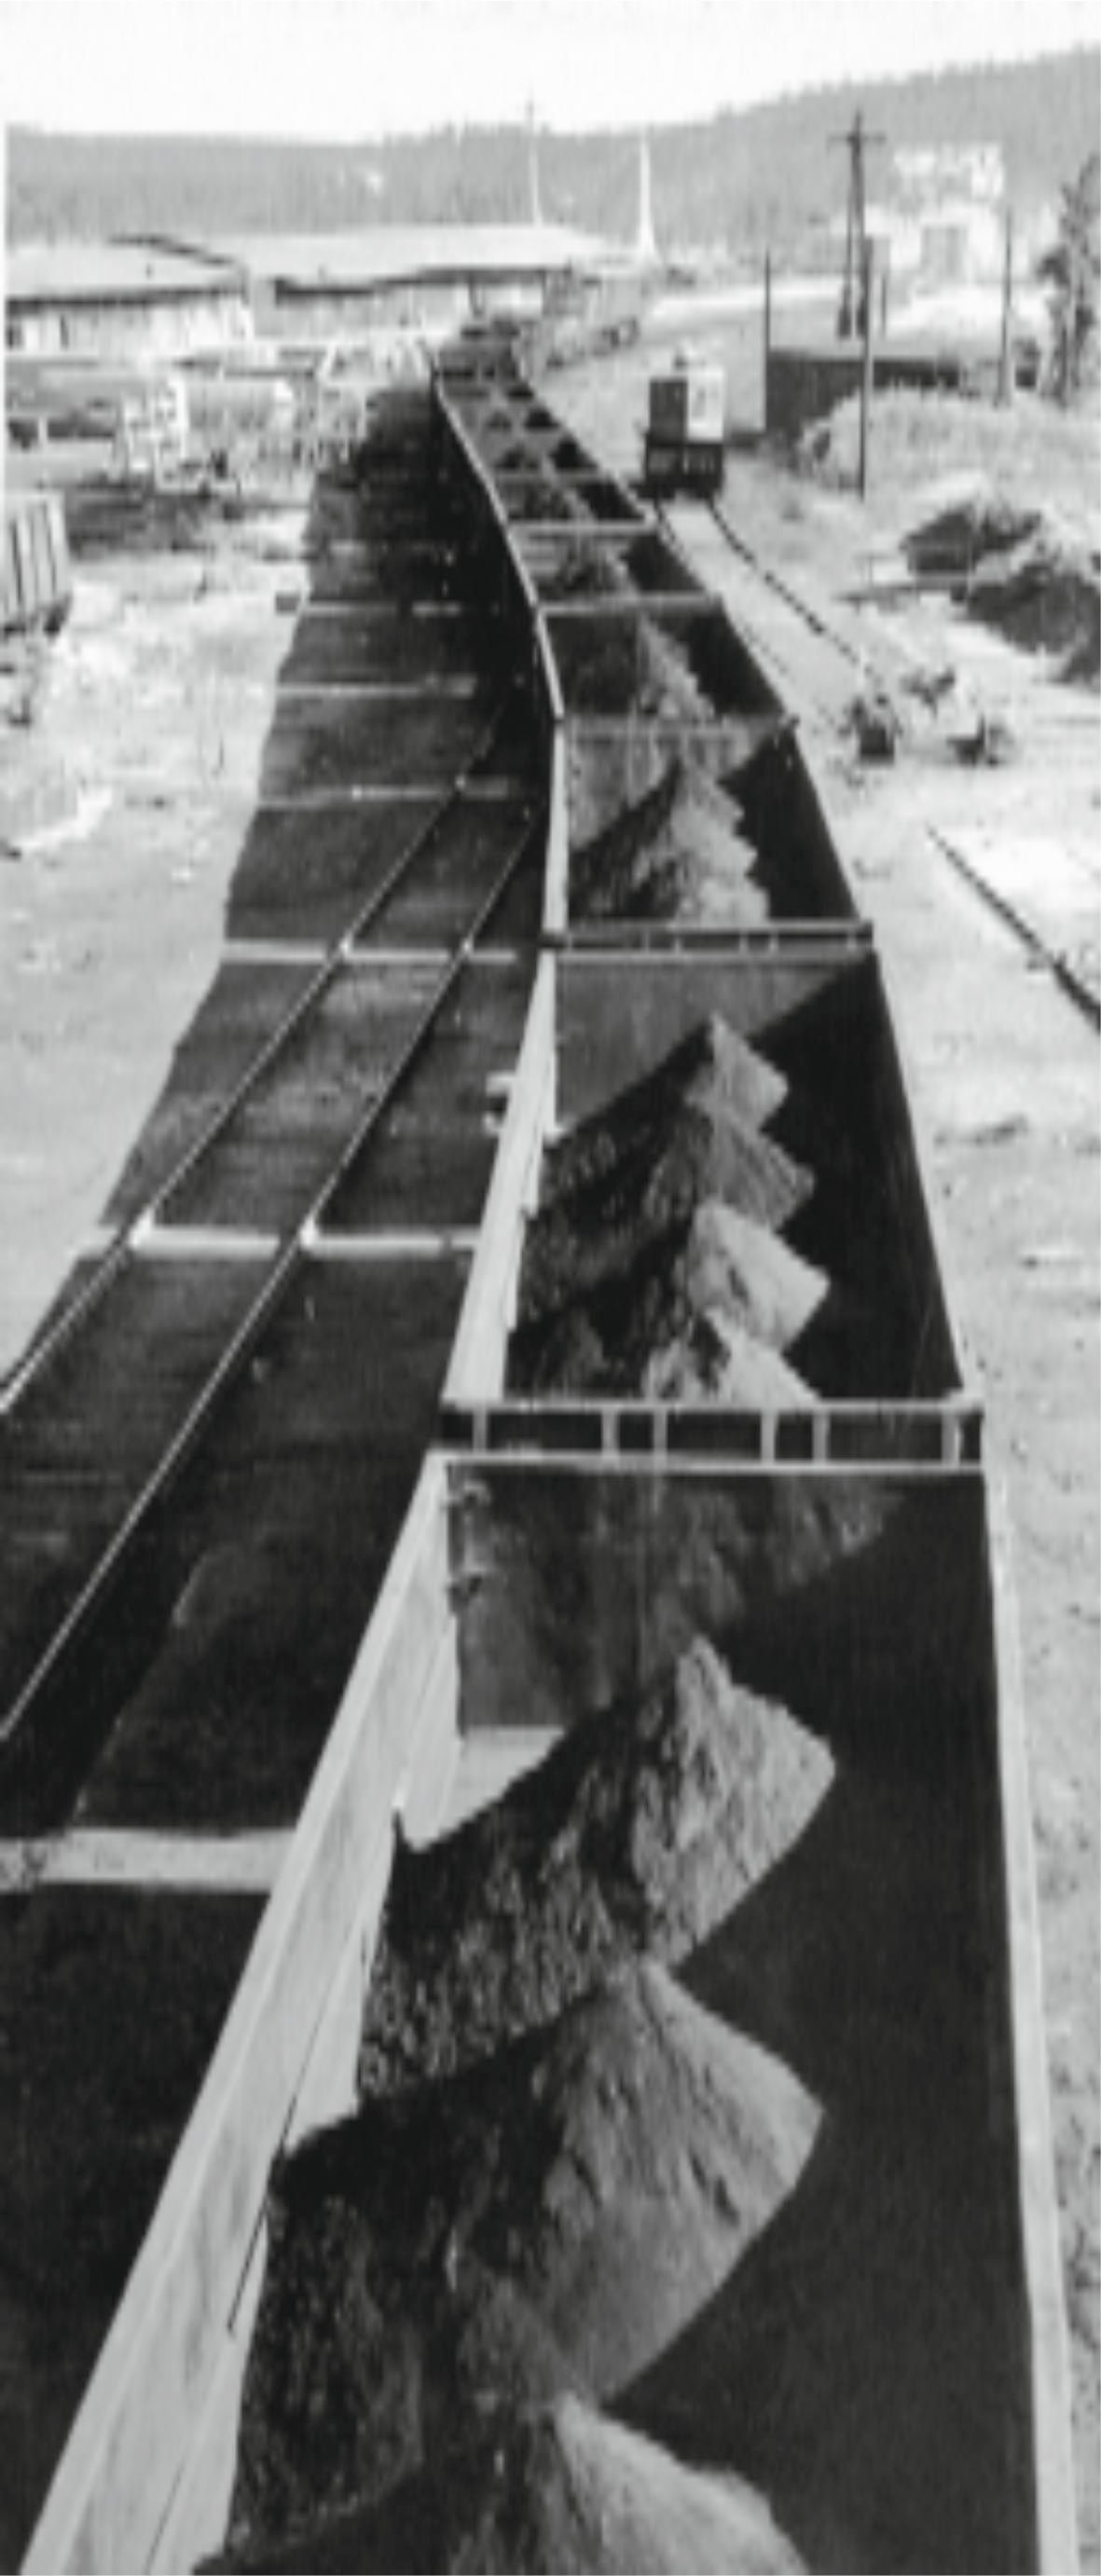 Состав с магнетитовым концентратом. 1970 г. Trainload of magnetite concentrate, 1970.